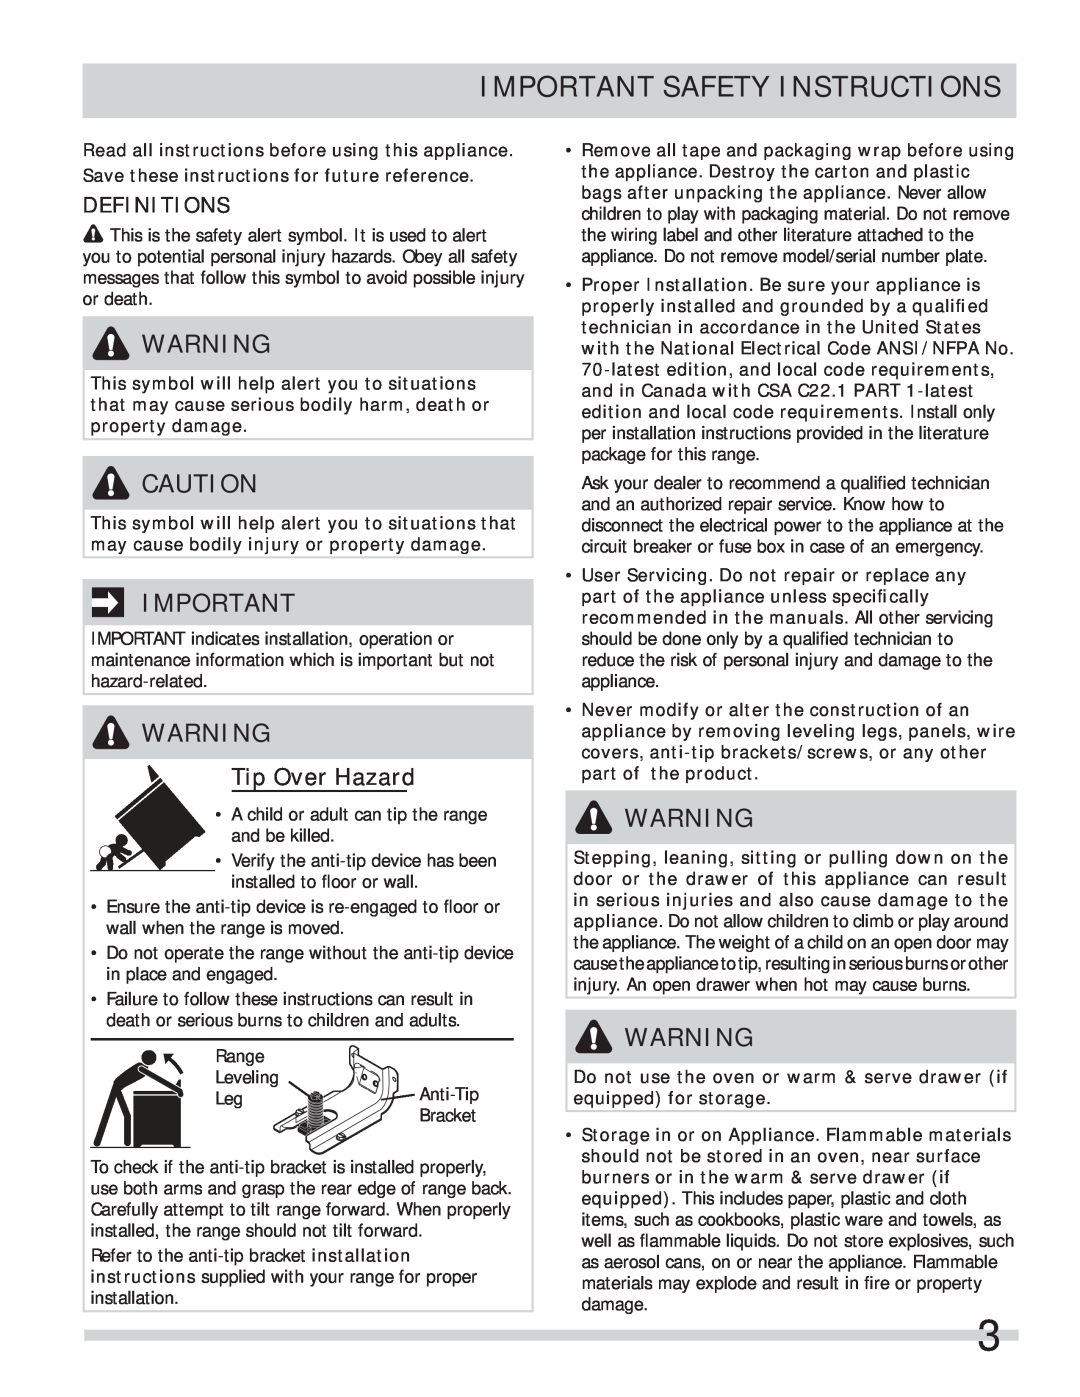 Frigidaire FFES3027LS important safety instructions Important Safety Instructions, Definitions, Tip Over Hazard 